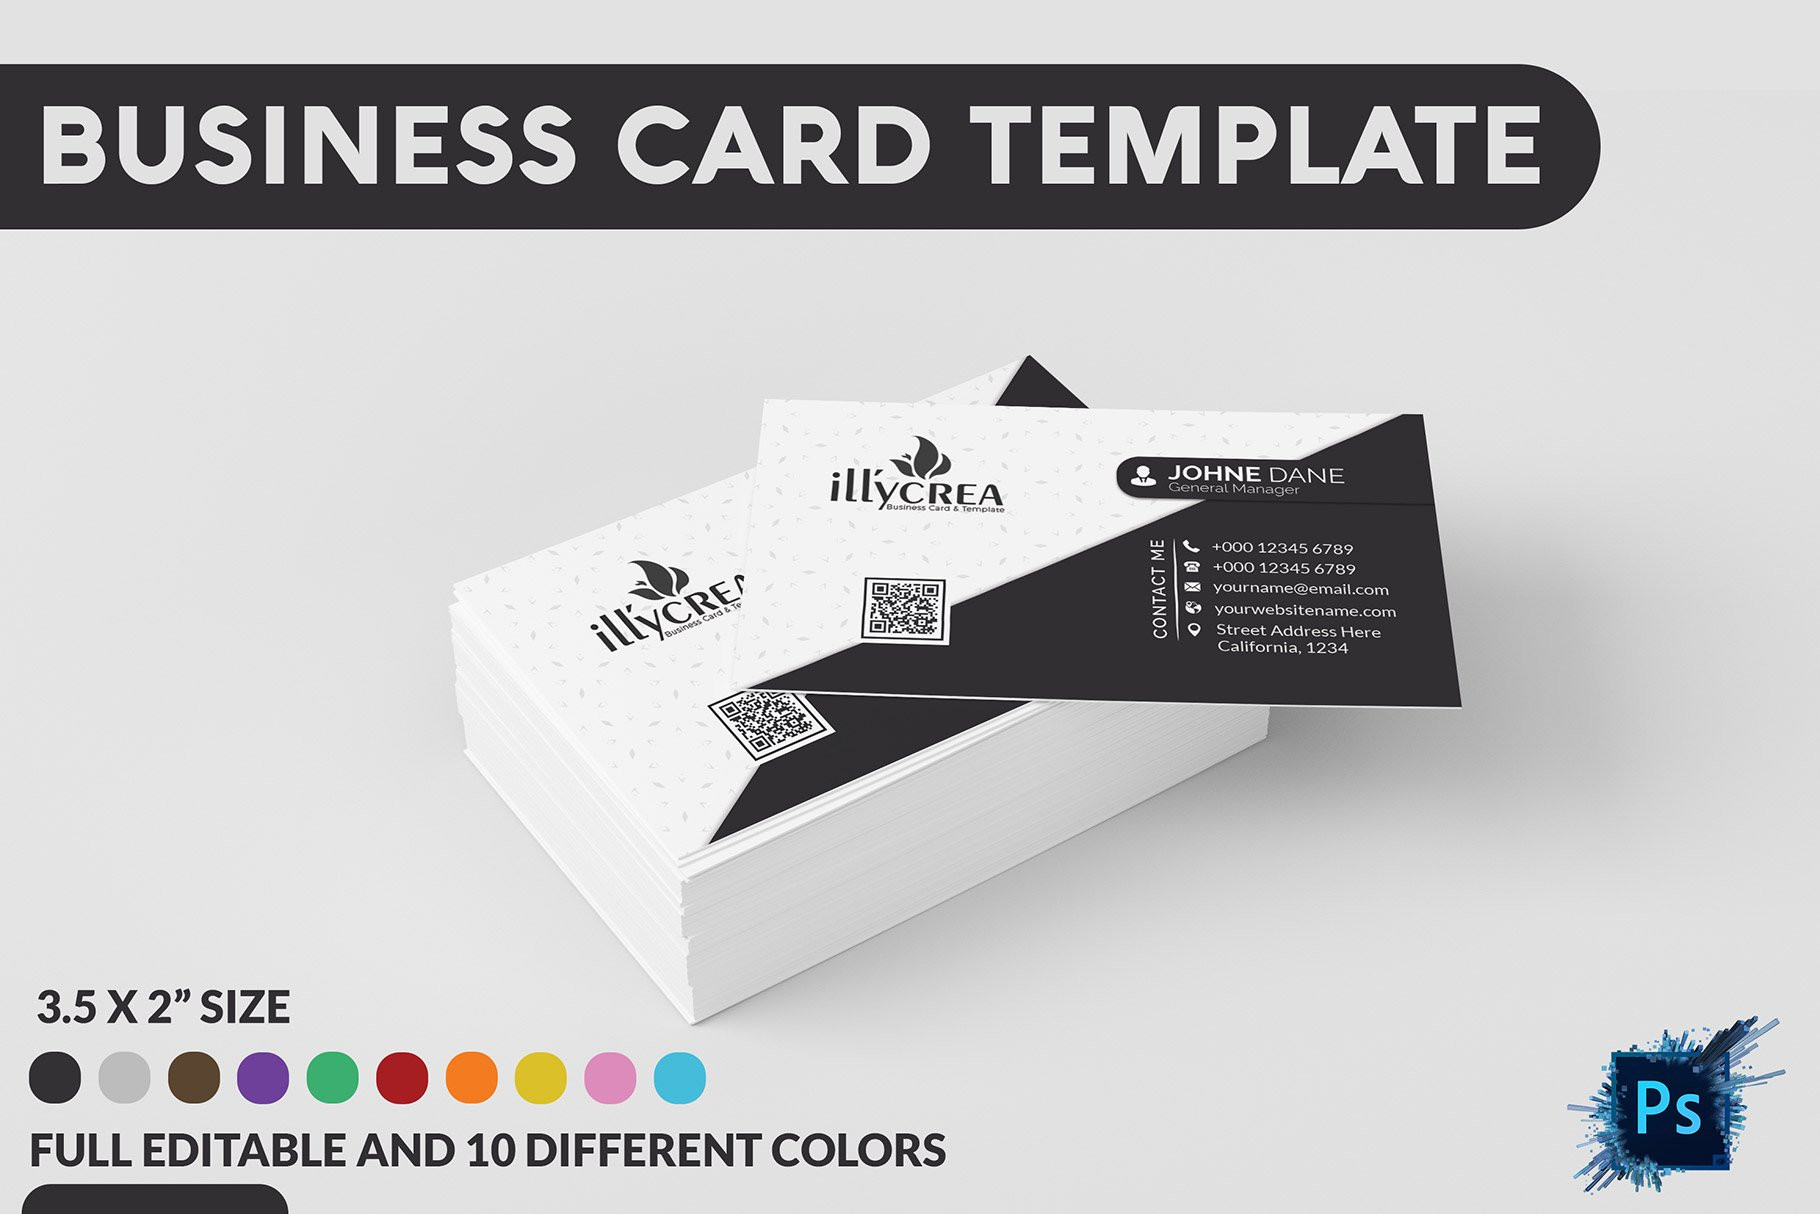 Business Card Template Business Card Templates Creative Of Editable Business Card Templates Free